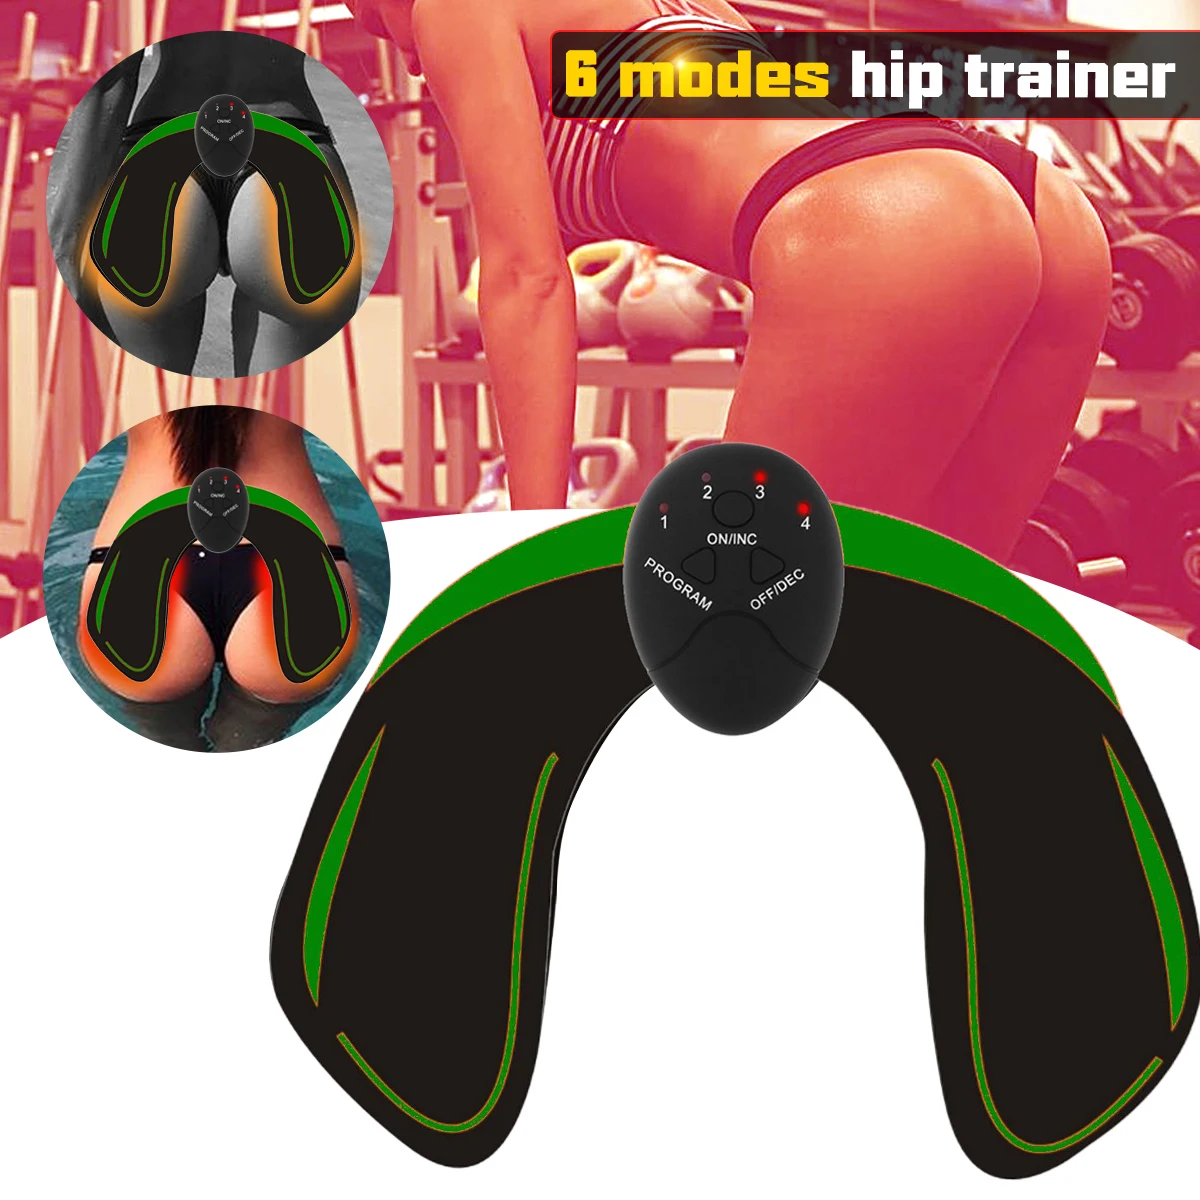 KIFIT EMS хип тренажер устройство подъема ягодиц приклад обучение усилитель мышечная стимуляция Body Shaper средство для похудения ягодиц